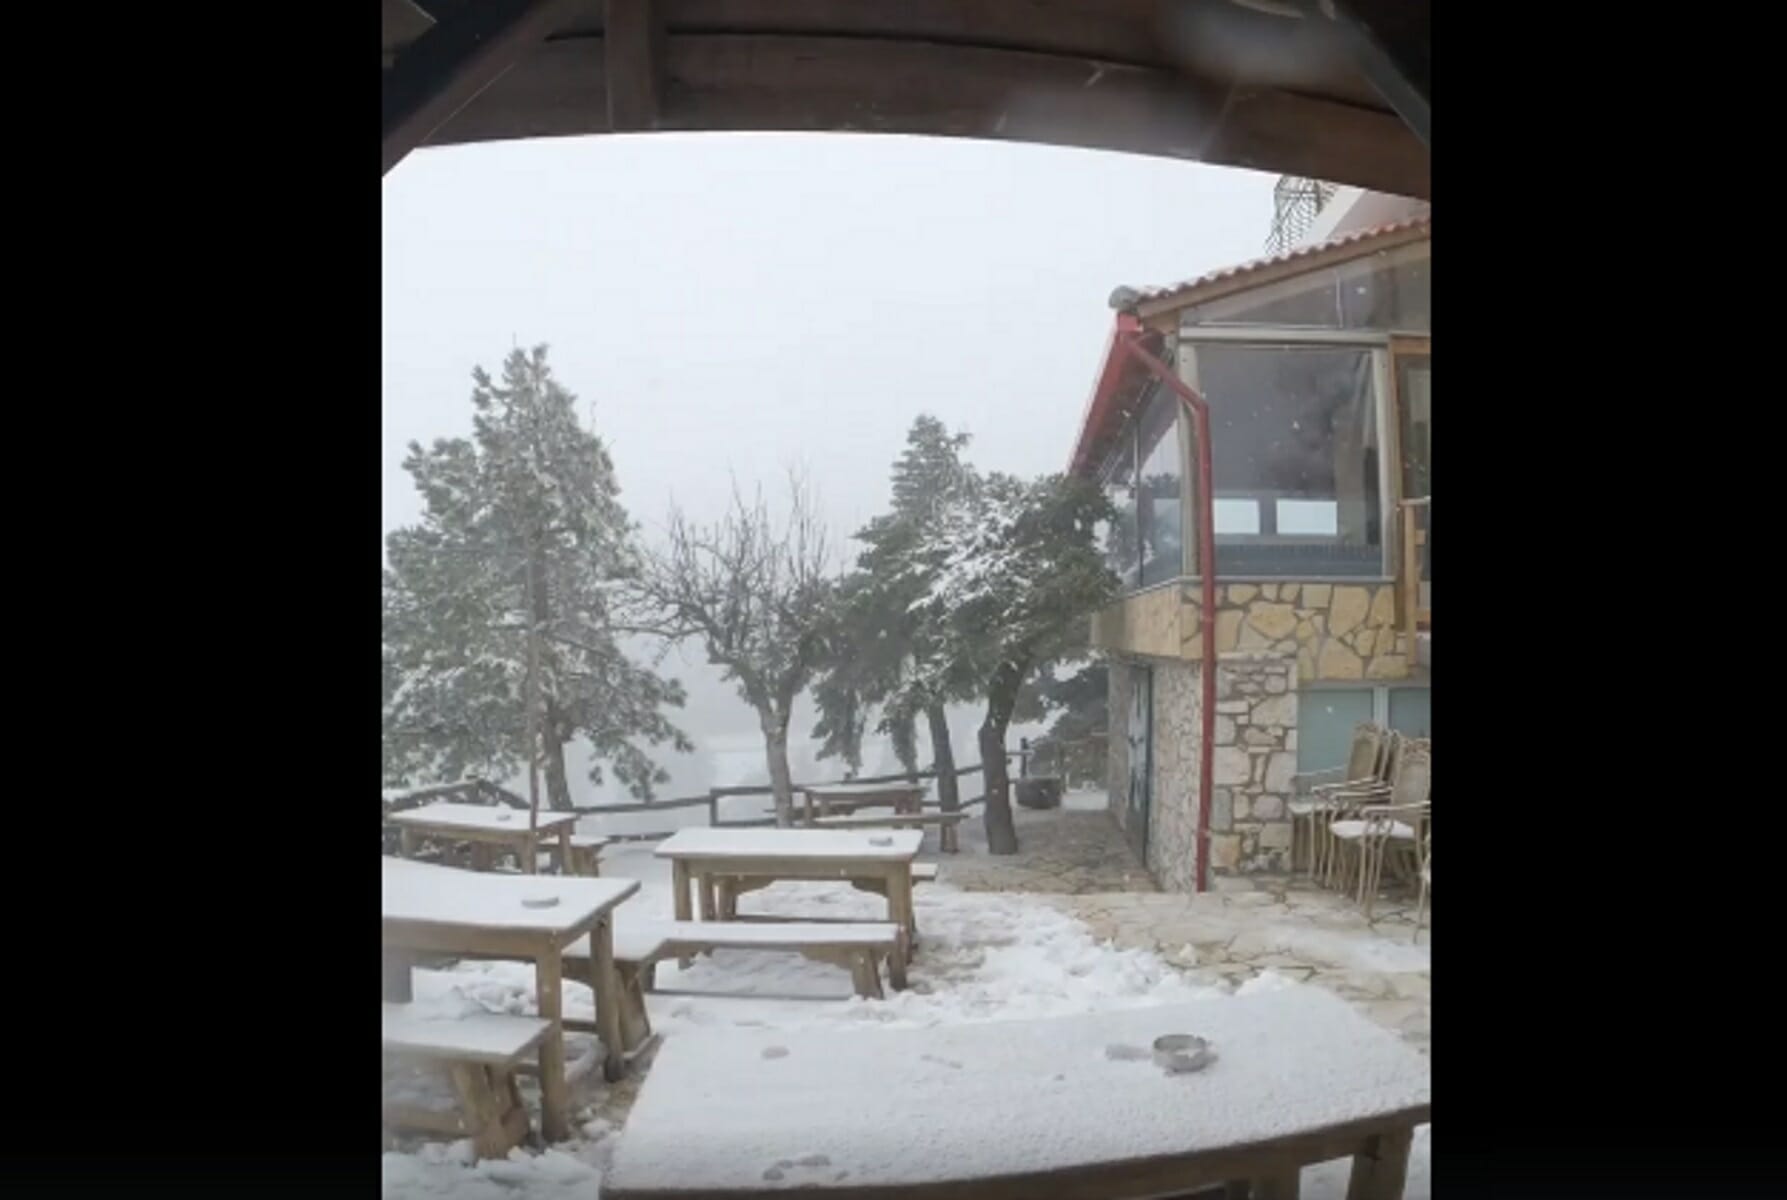 Καιρός: Χιονίζει στην Πάρνηθα! Μαγικές εικόνες από το καταφύγιο Μπάφι